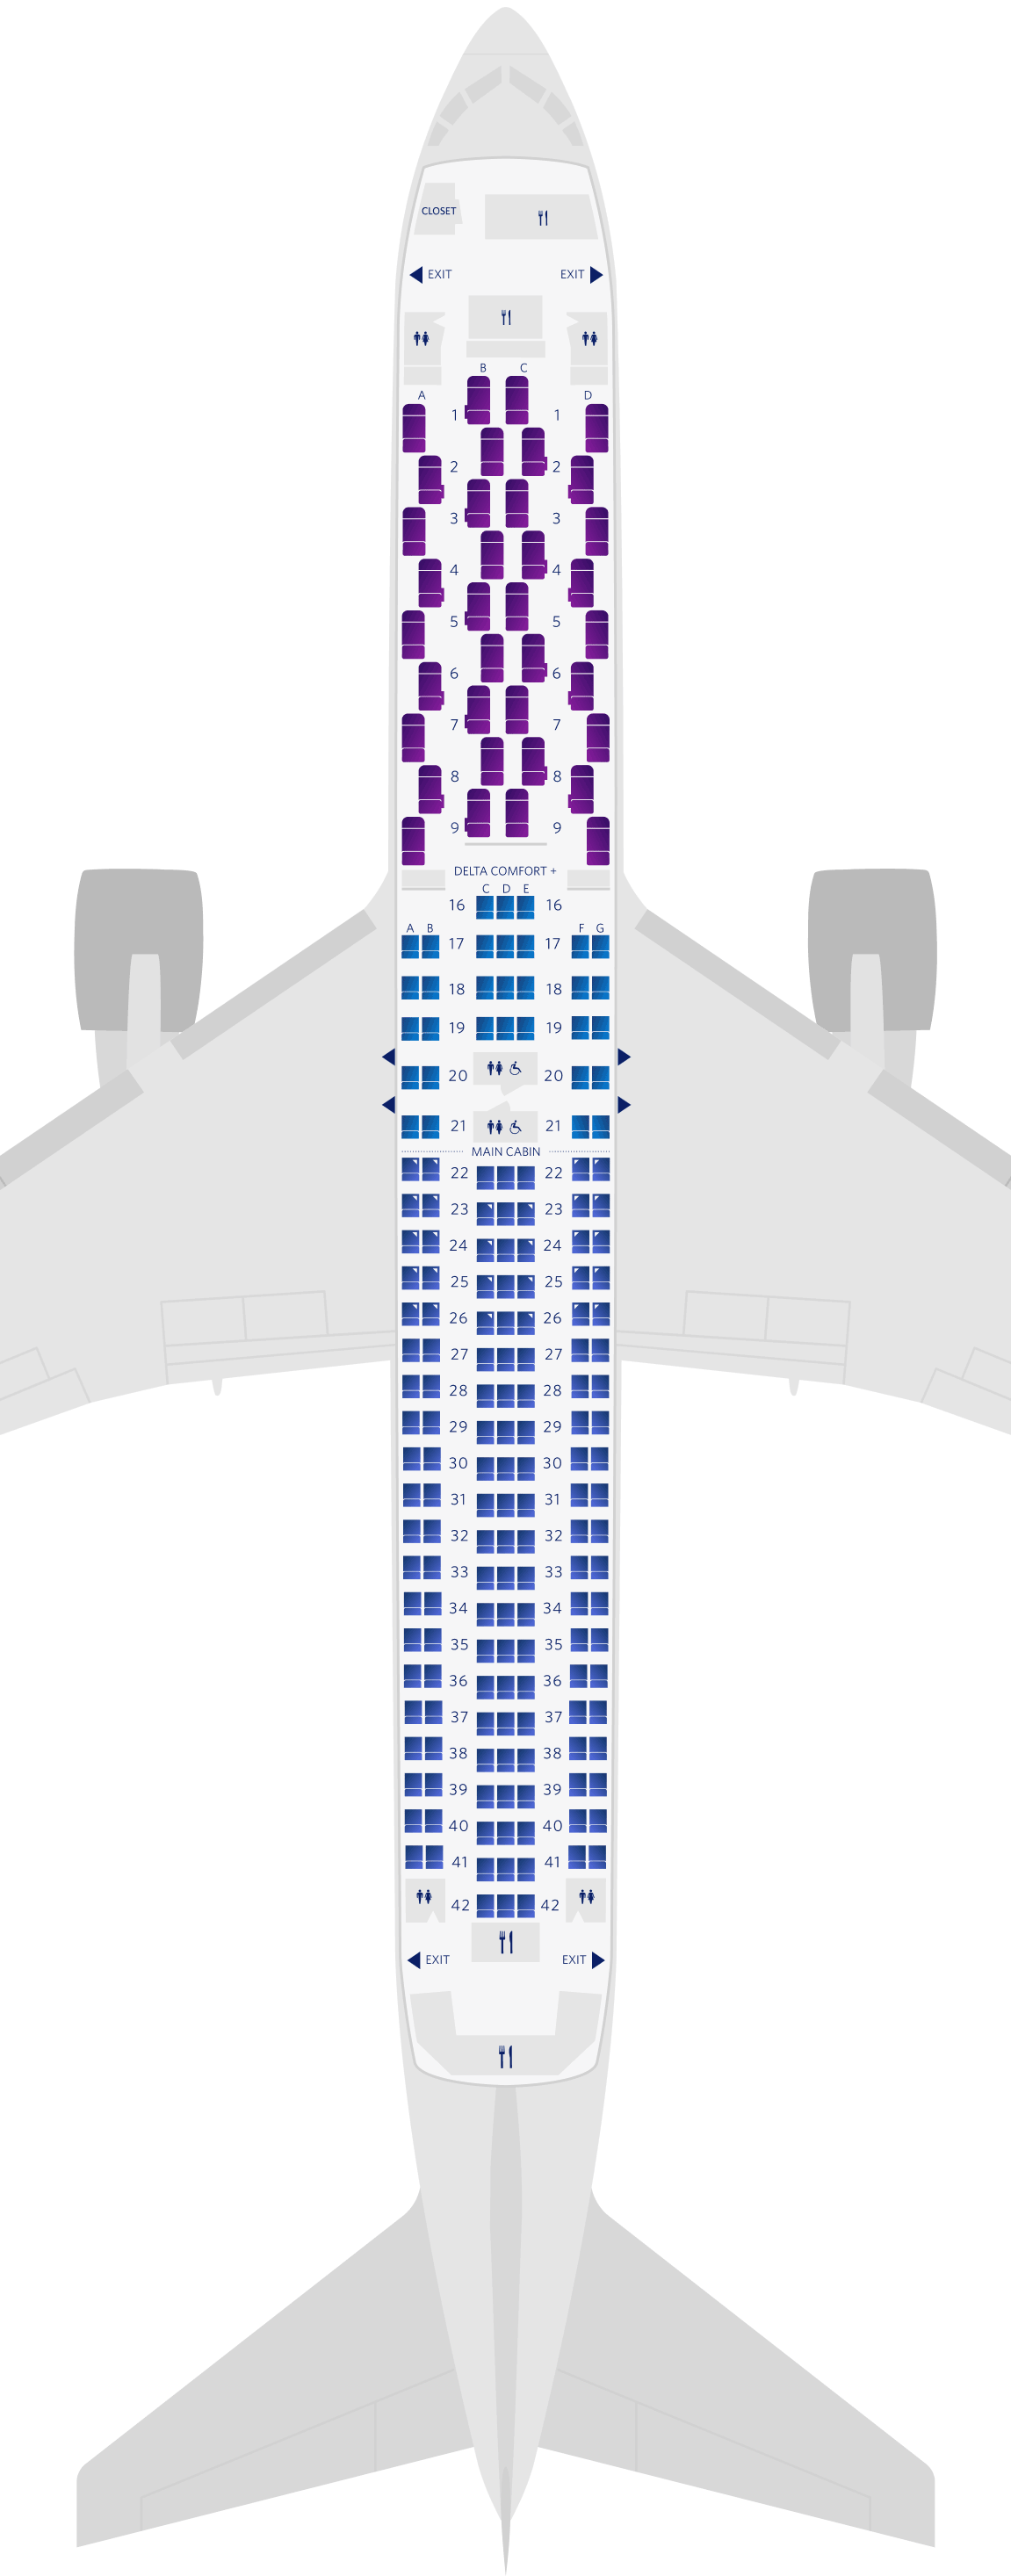 波音767-300ER (76L)座位图